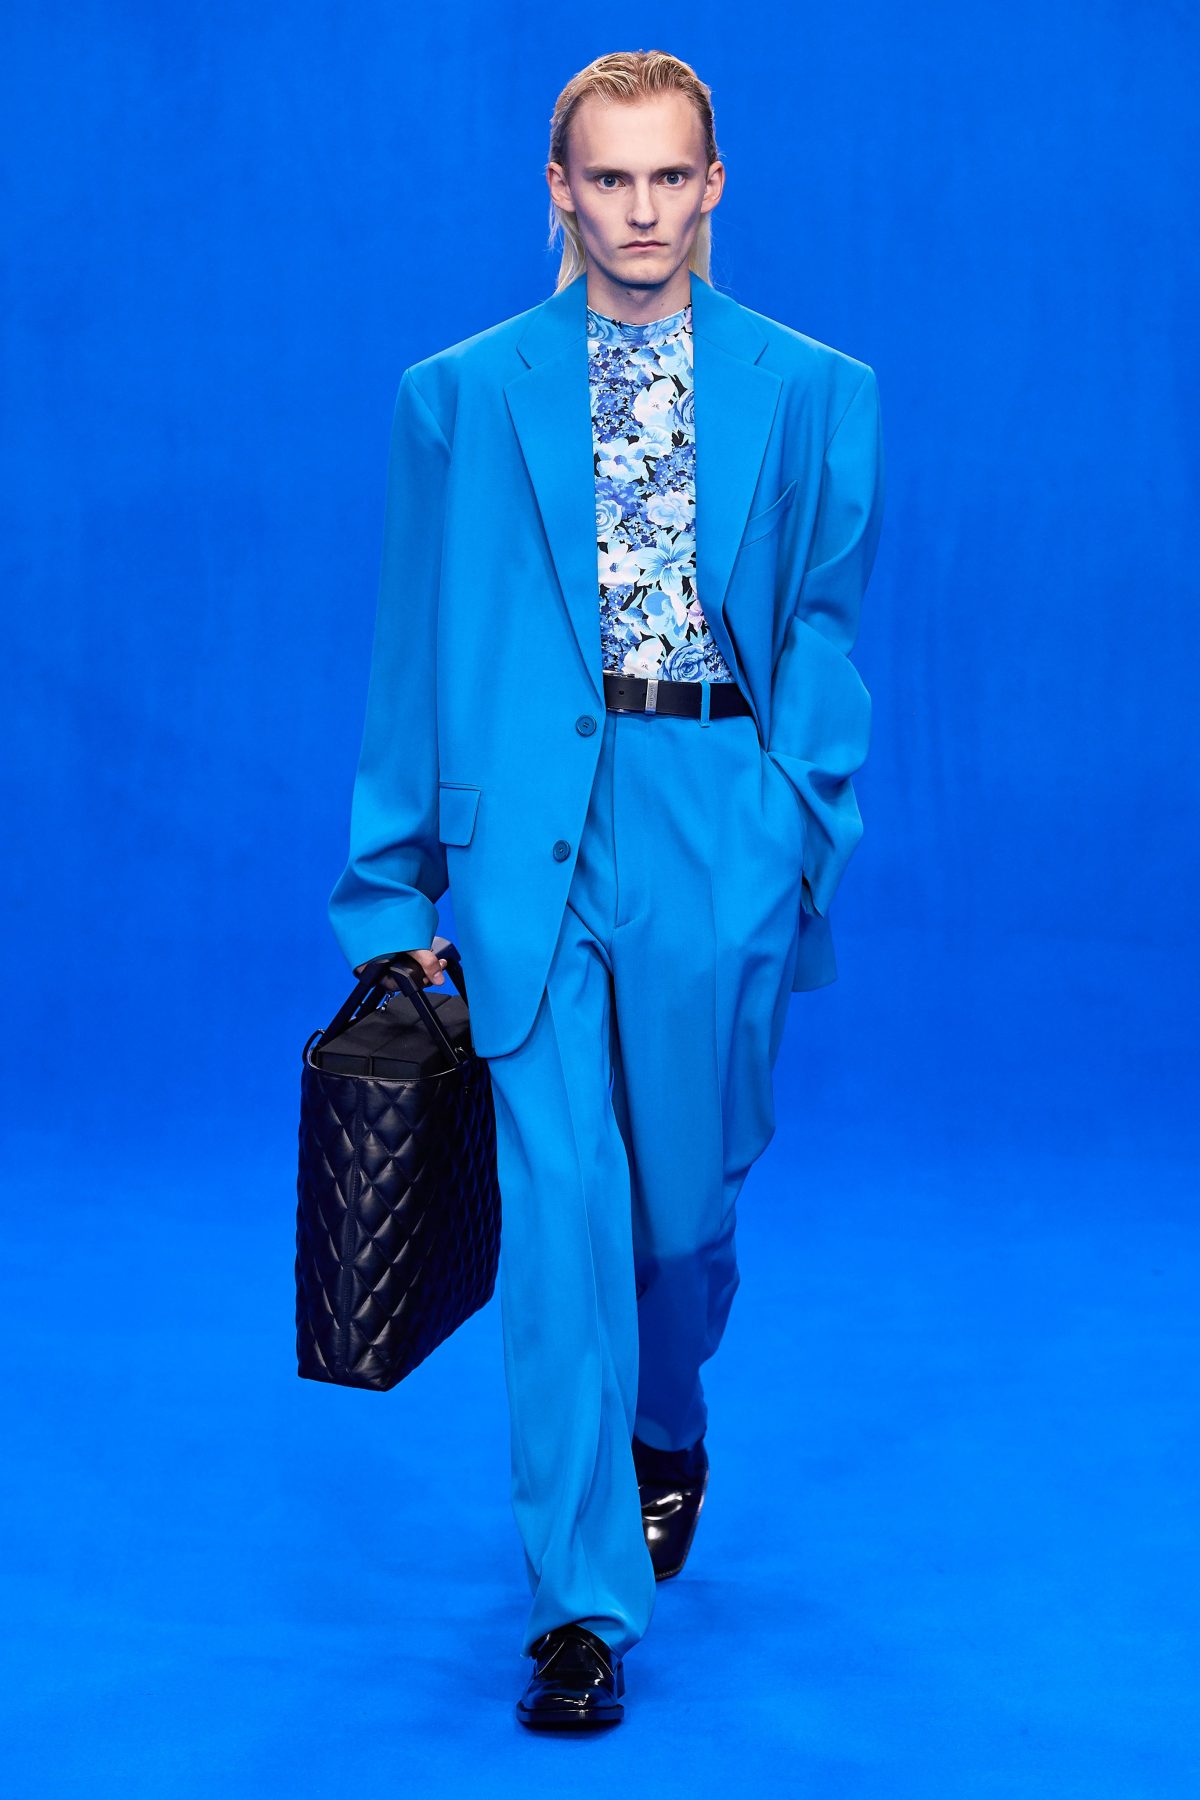 Balenciaga Spring/Summer 2020 Ready-to-Wear Show Review